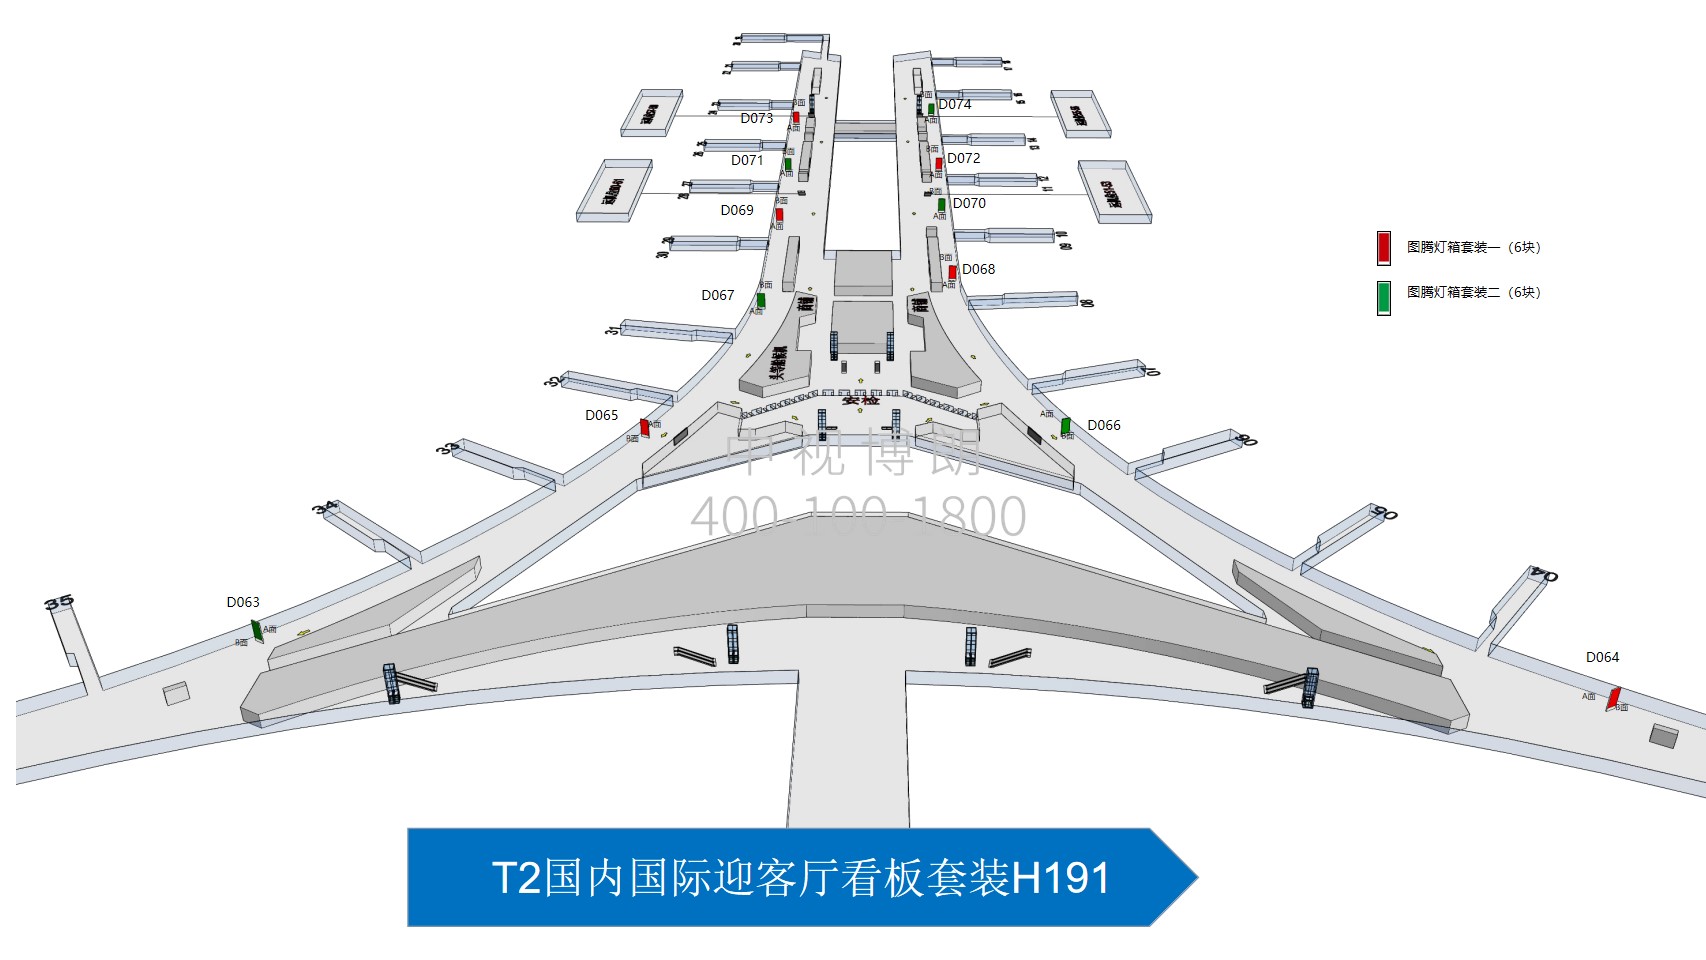 北京首都机场广告-T3C国内候机区图腾灯箱套装位置图